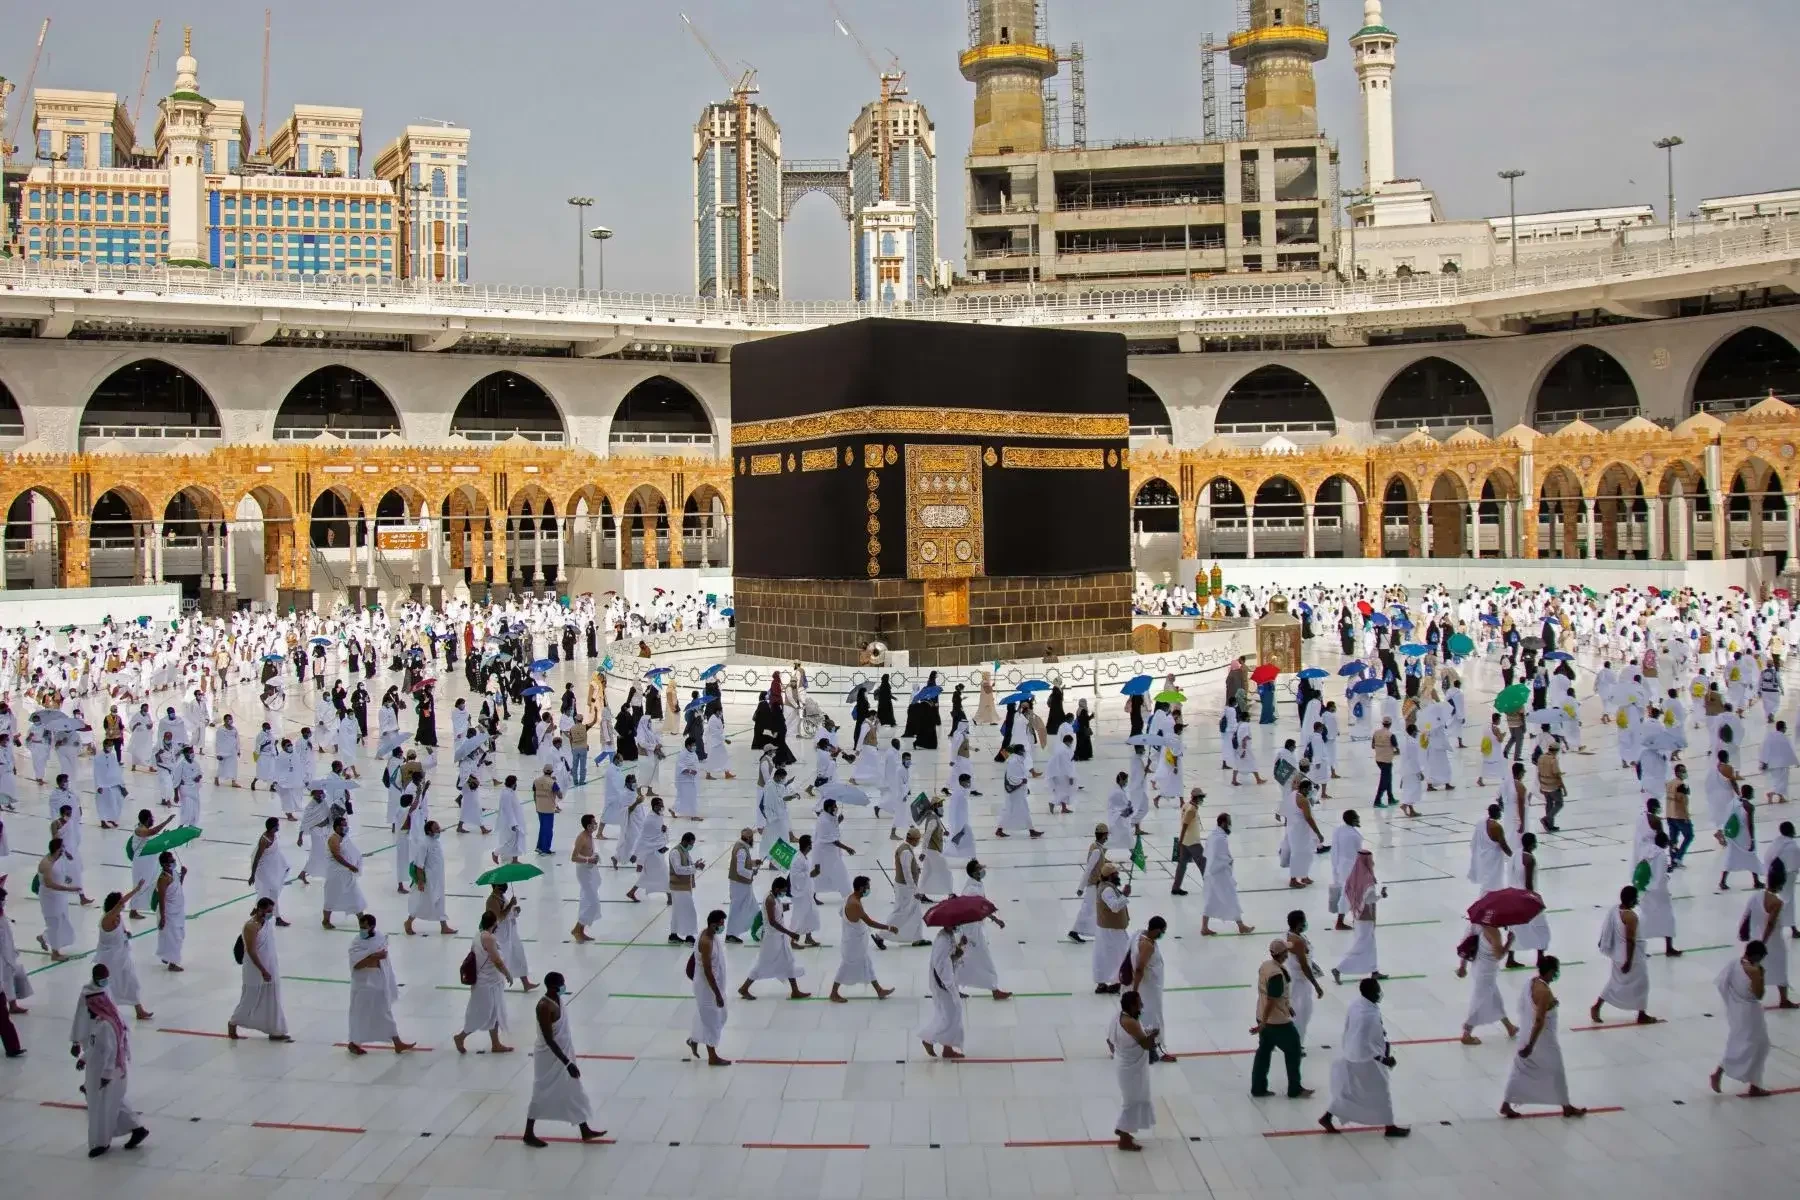 Jemaah umrah mulai berdatangan untuk beribadah di Masjidil Haram, Makkah. (Foto: Istimewa)